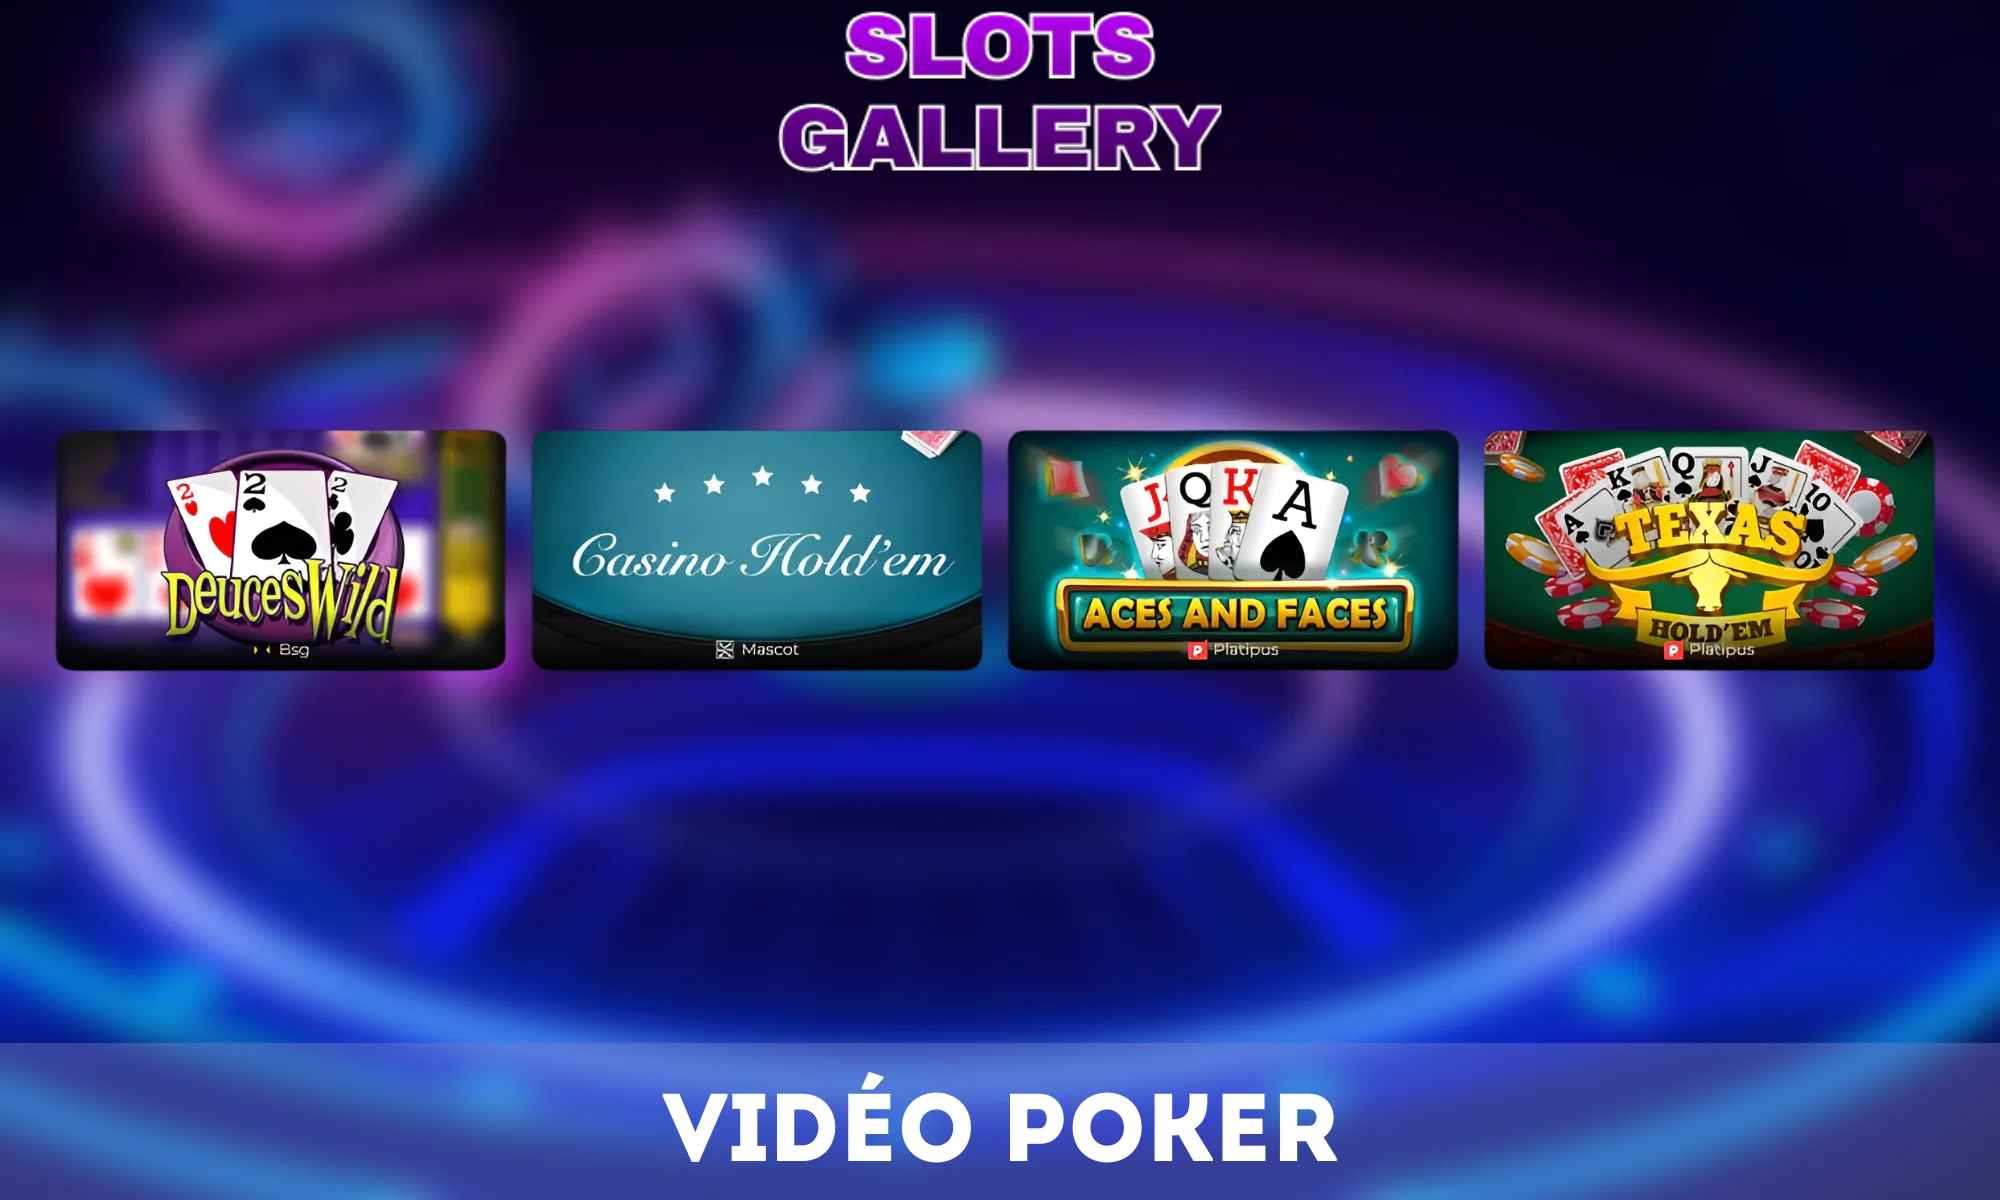 Le Vidéo Poker est un jeu populaire dans la Galerie des machines à sous